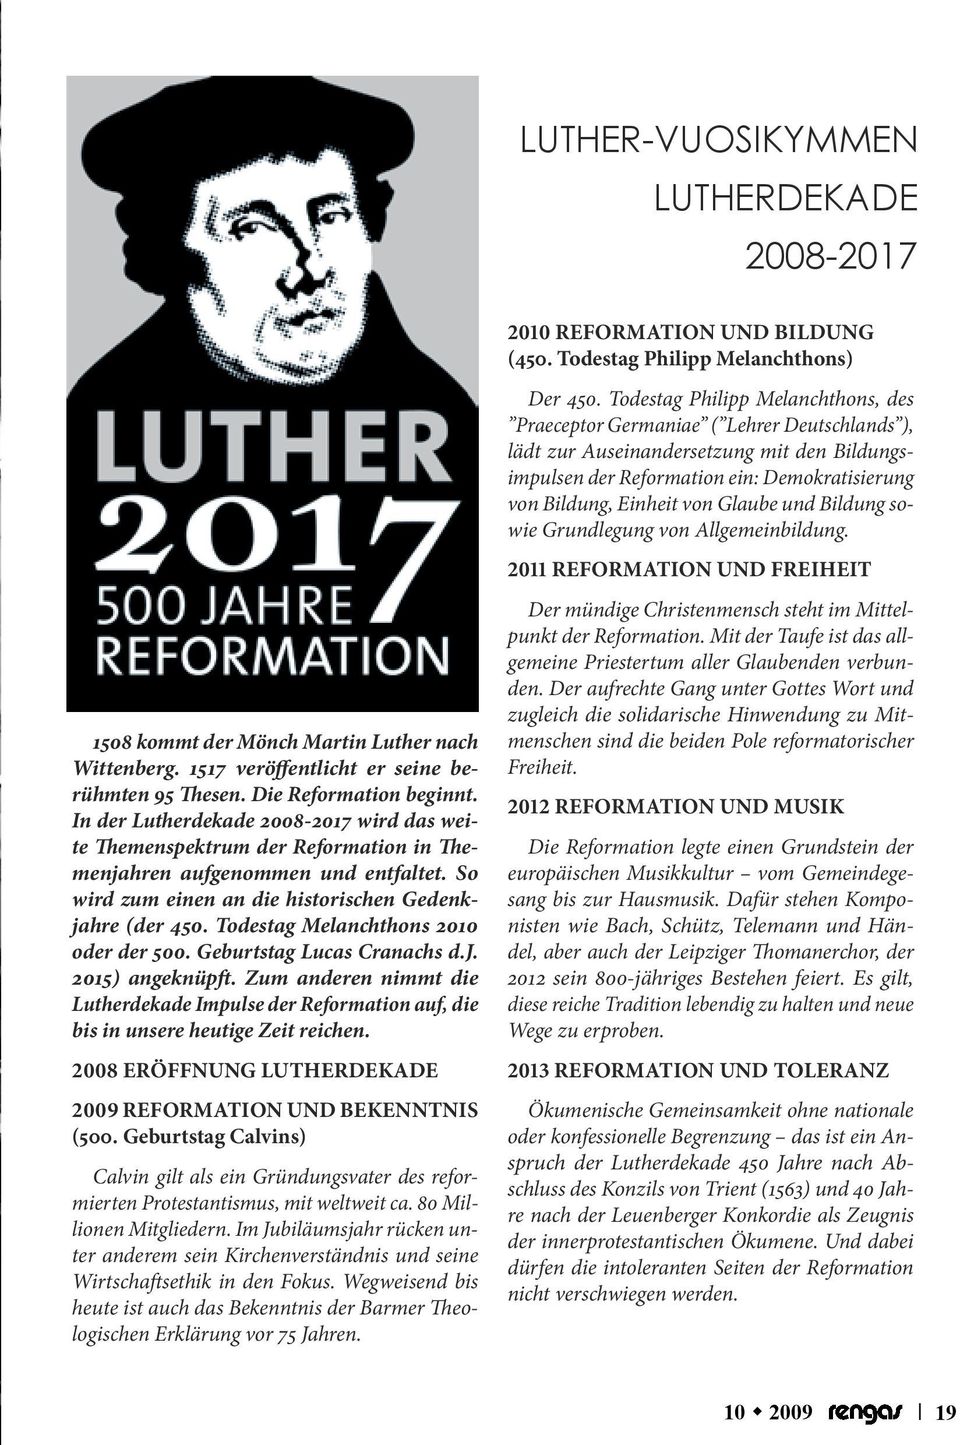 Todestag Melanchthons 2010 oder der 500. Geburtstag Lucas Cranachs d.j. 2015) angeknüpft. Zum anderen nimmt die Lutherdekade Impulse der Reformation auf, die bis in unsere heutige Zeit reichen.